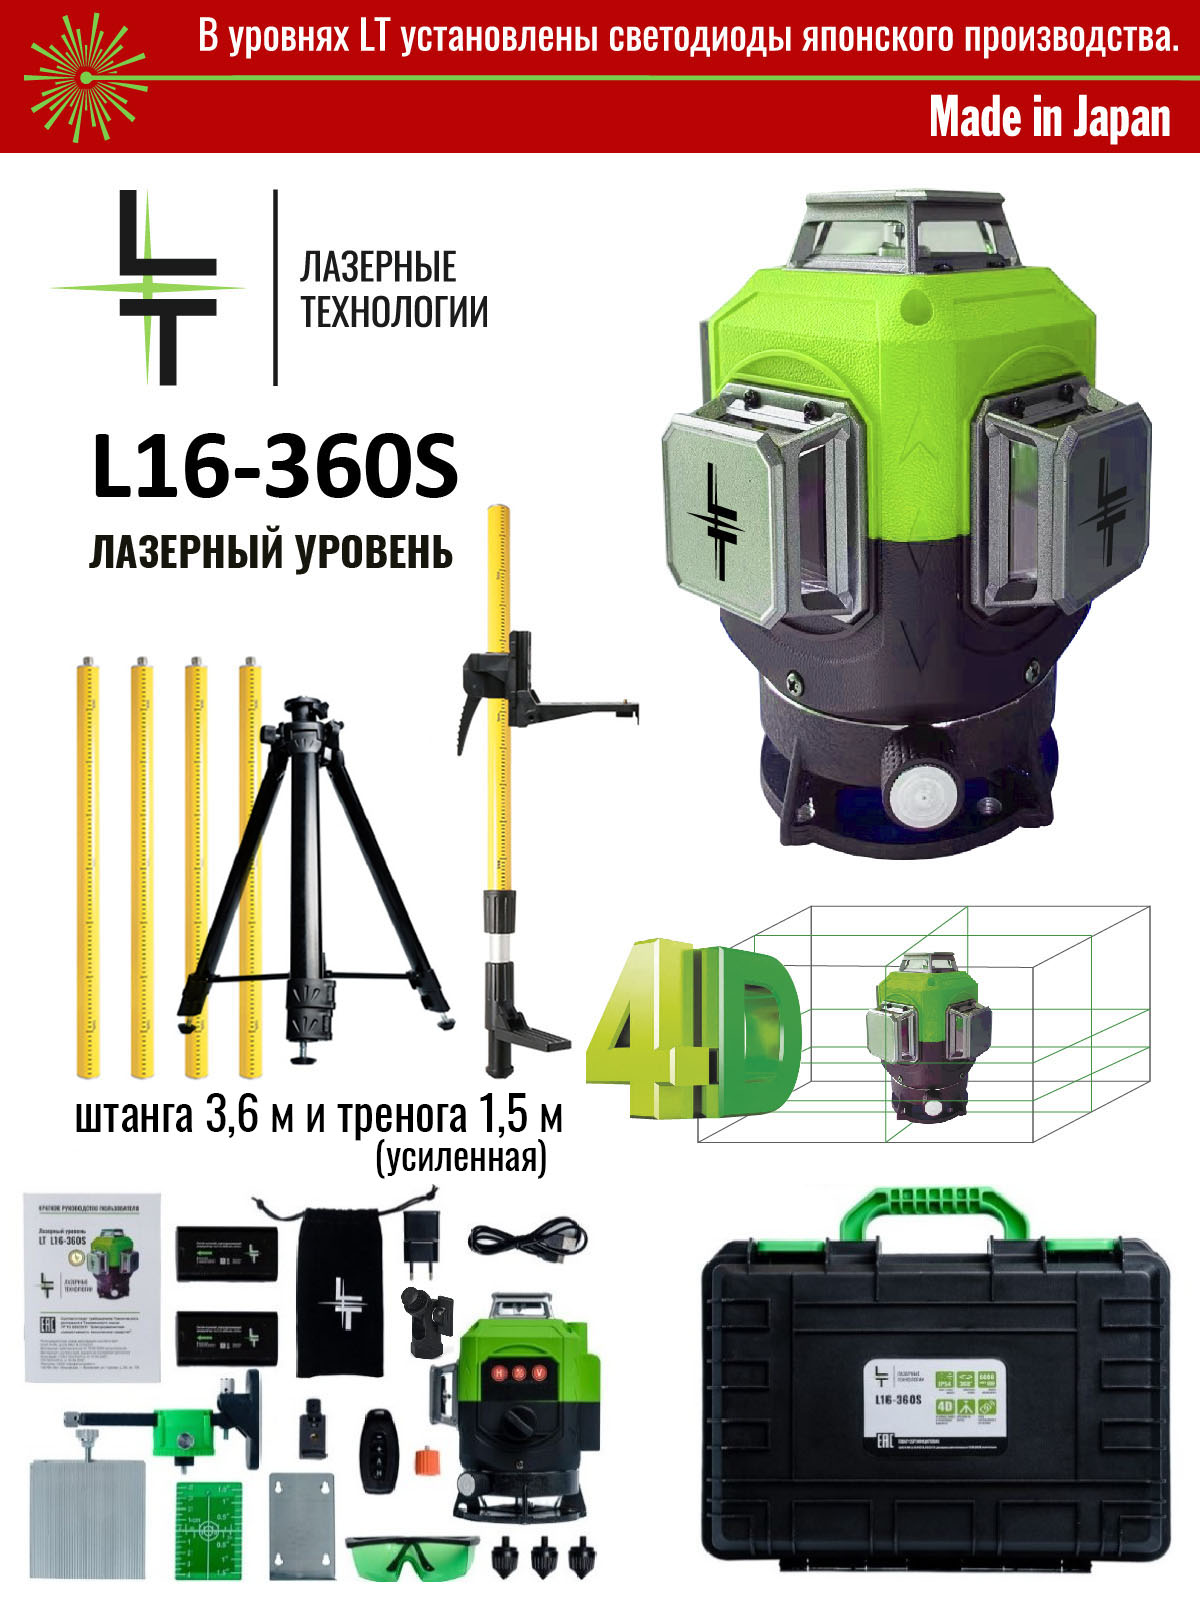 Профессиональный лазерный уровень LT 4D 16 линий серии S + Штатив 3.6м + Тренога 1.5м шланг высокого давления для серии 105 hux